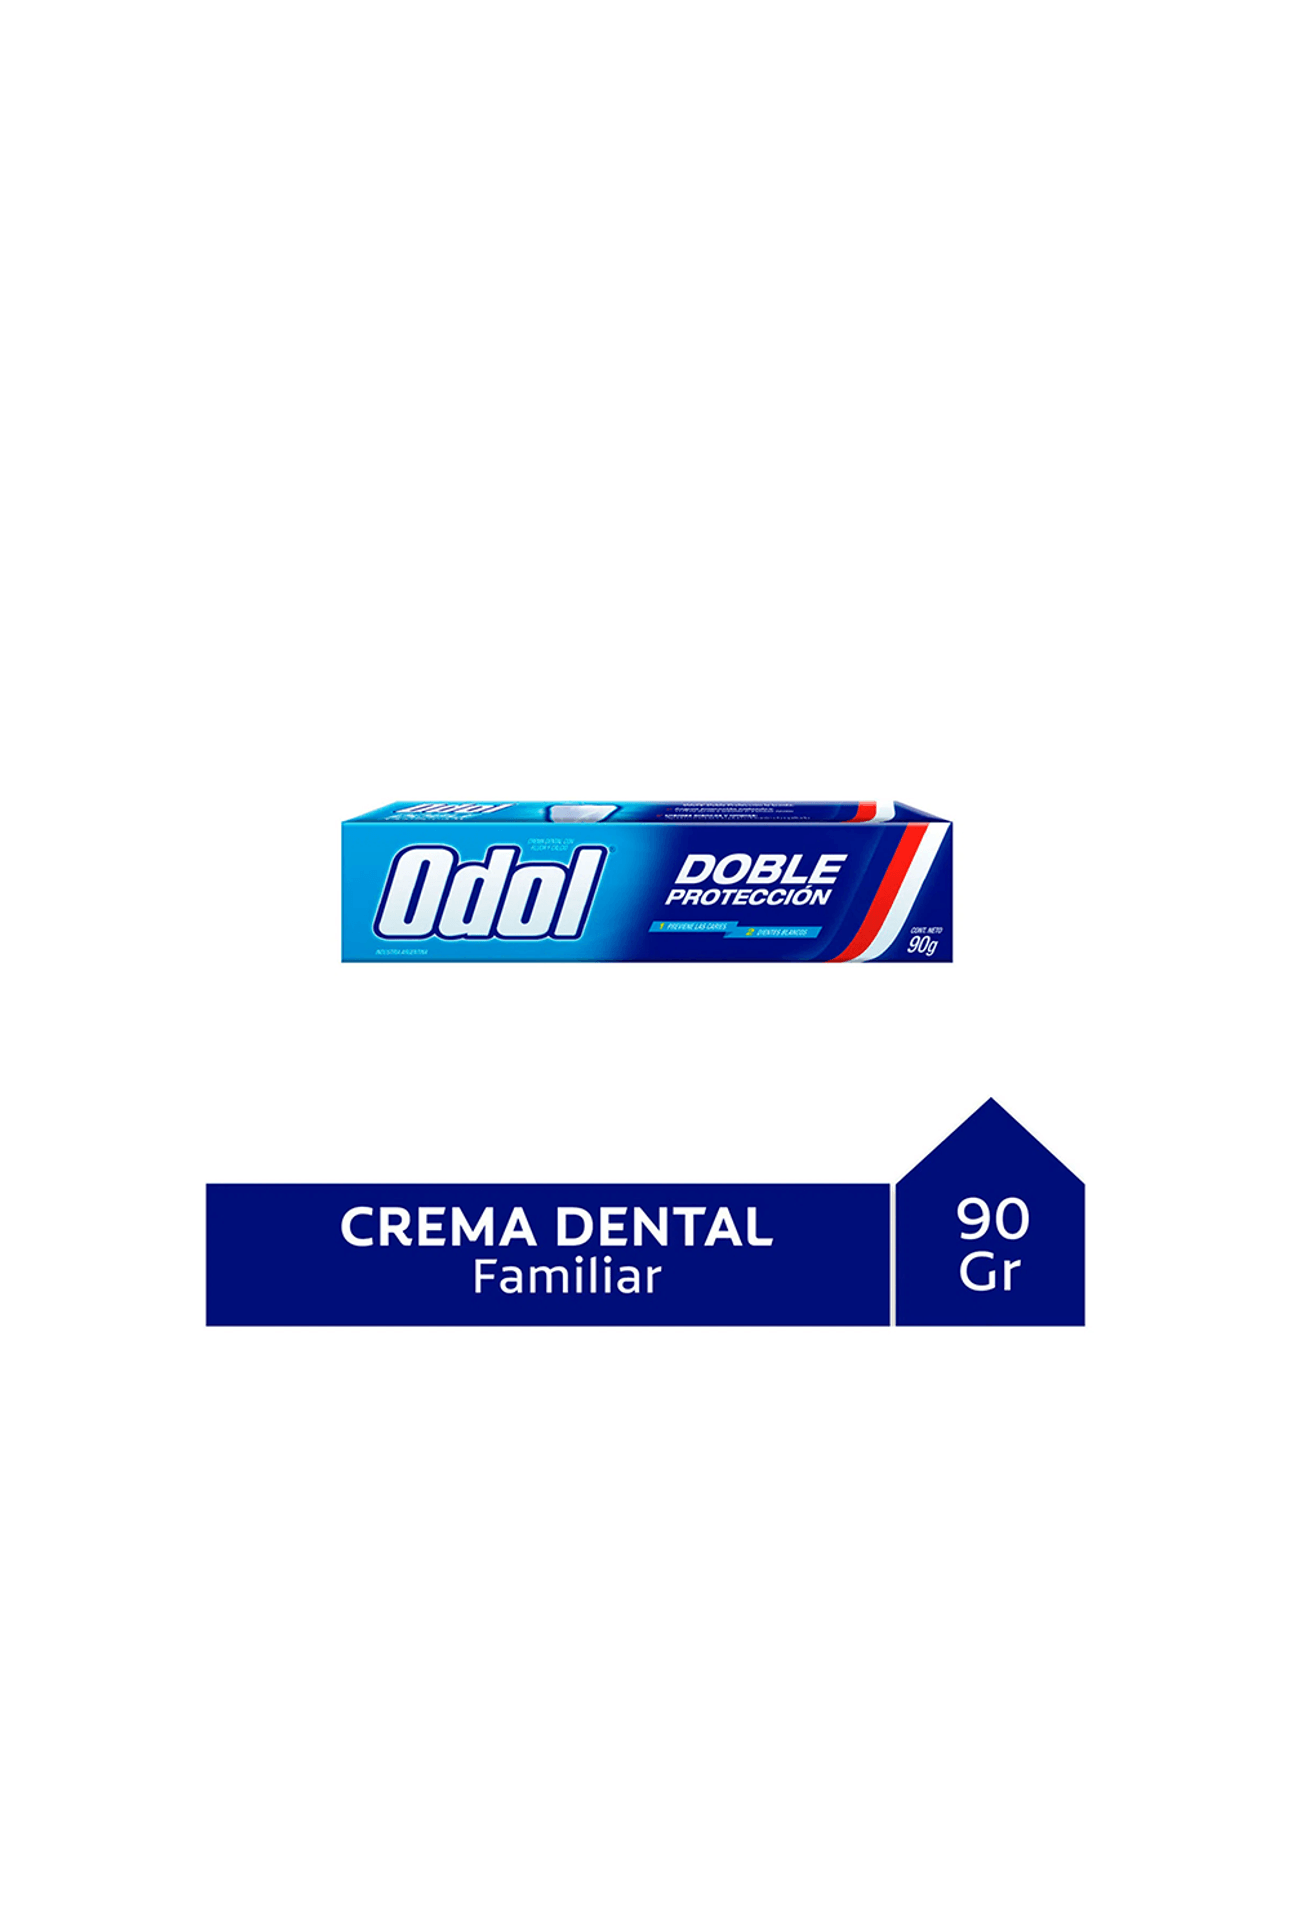 Odol-Crema-Dental-Odol-Doble-Proteccion-90-gr-7509546687292_img1